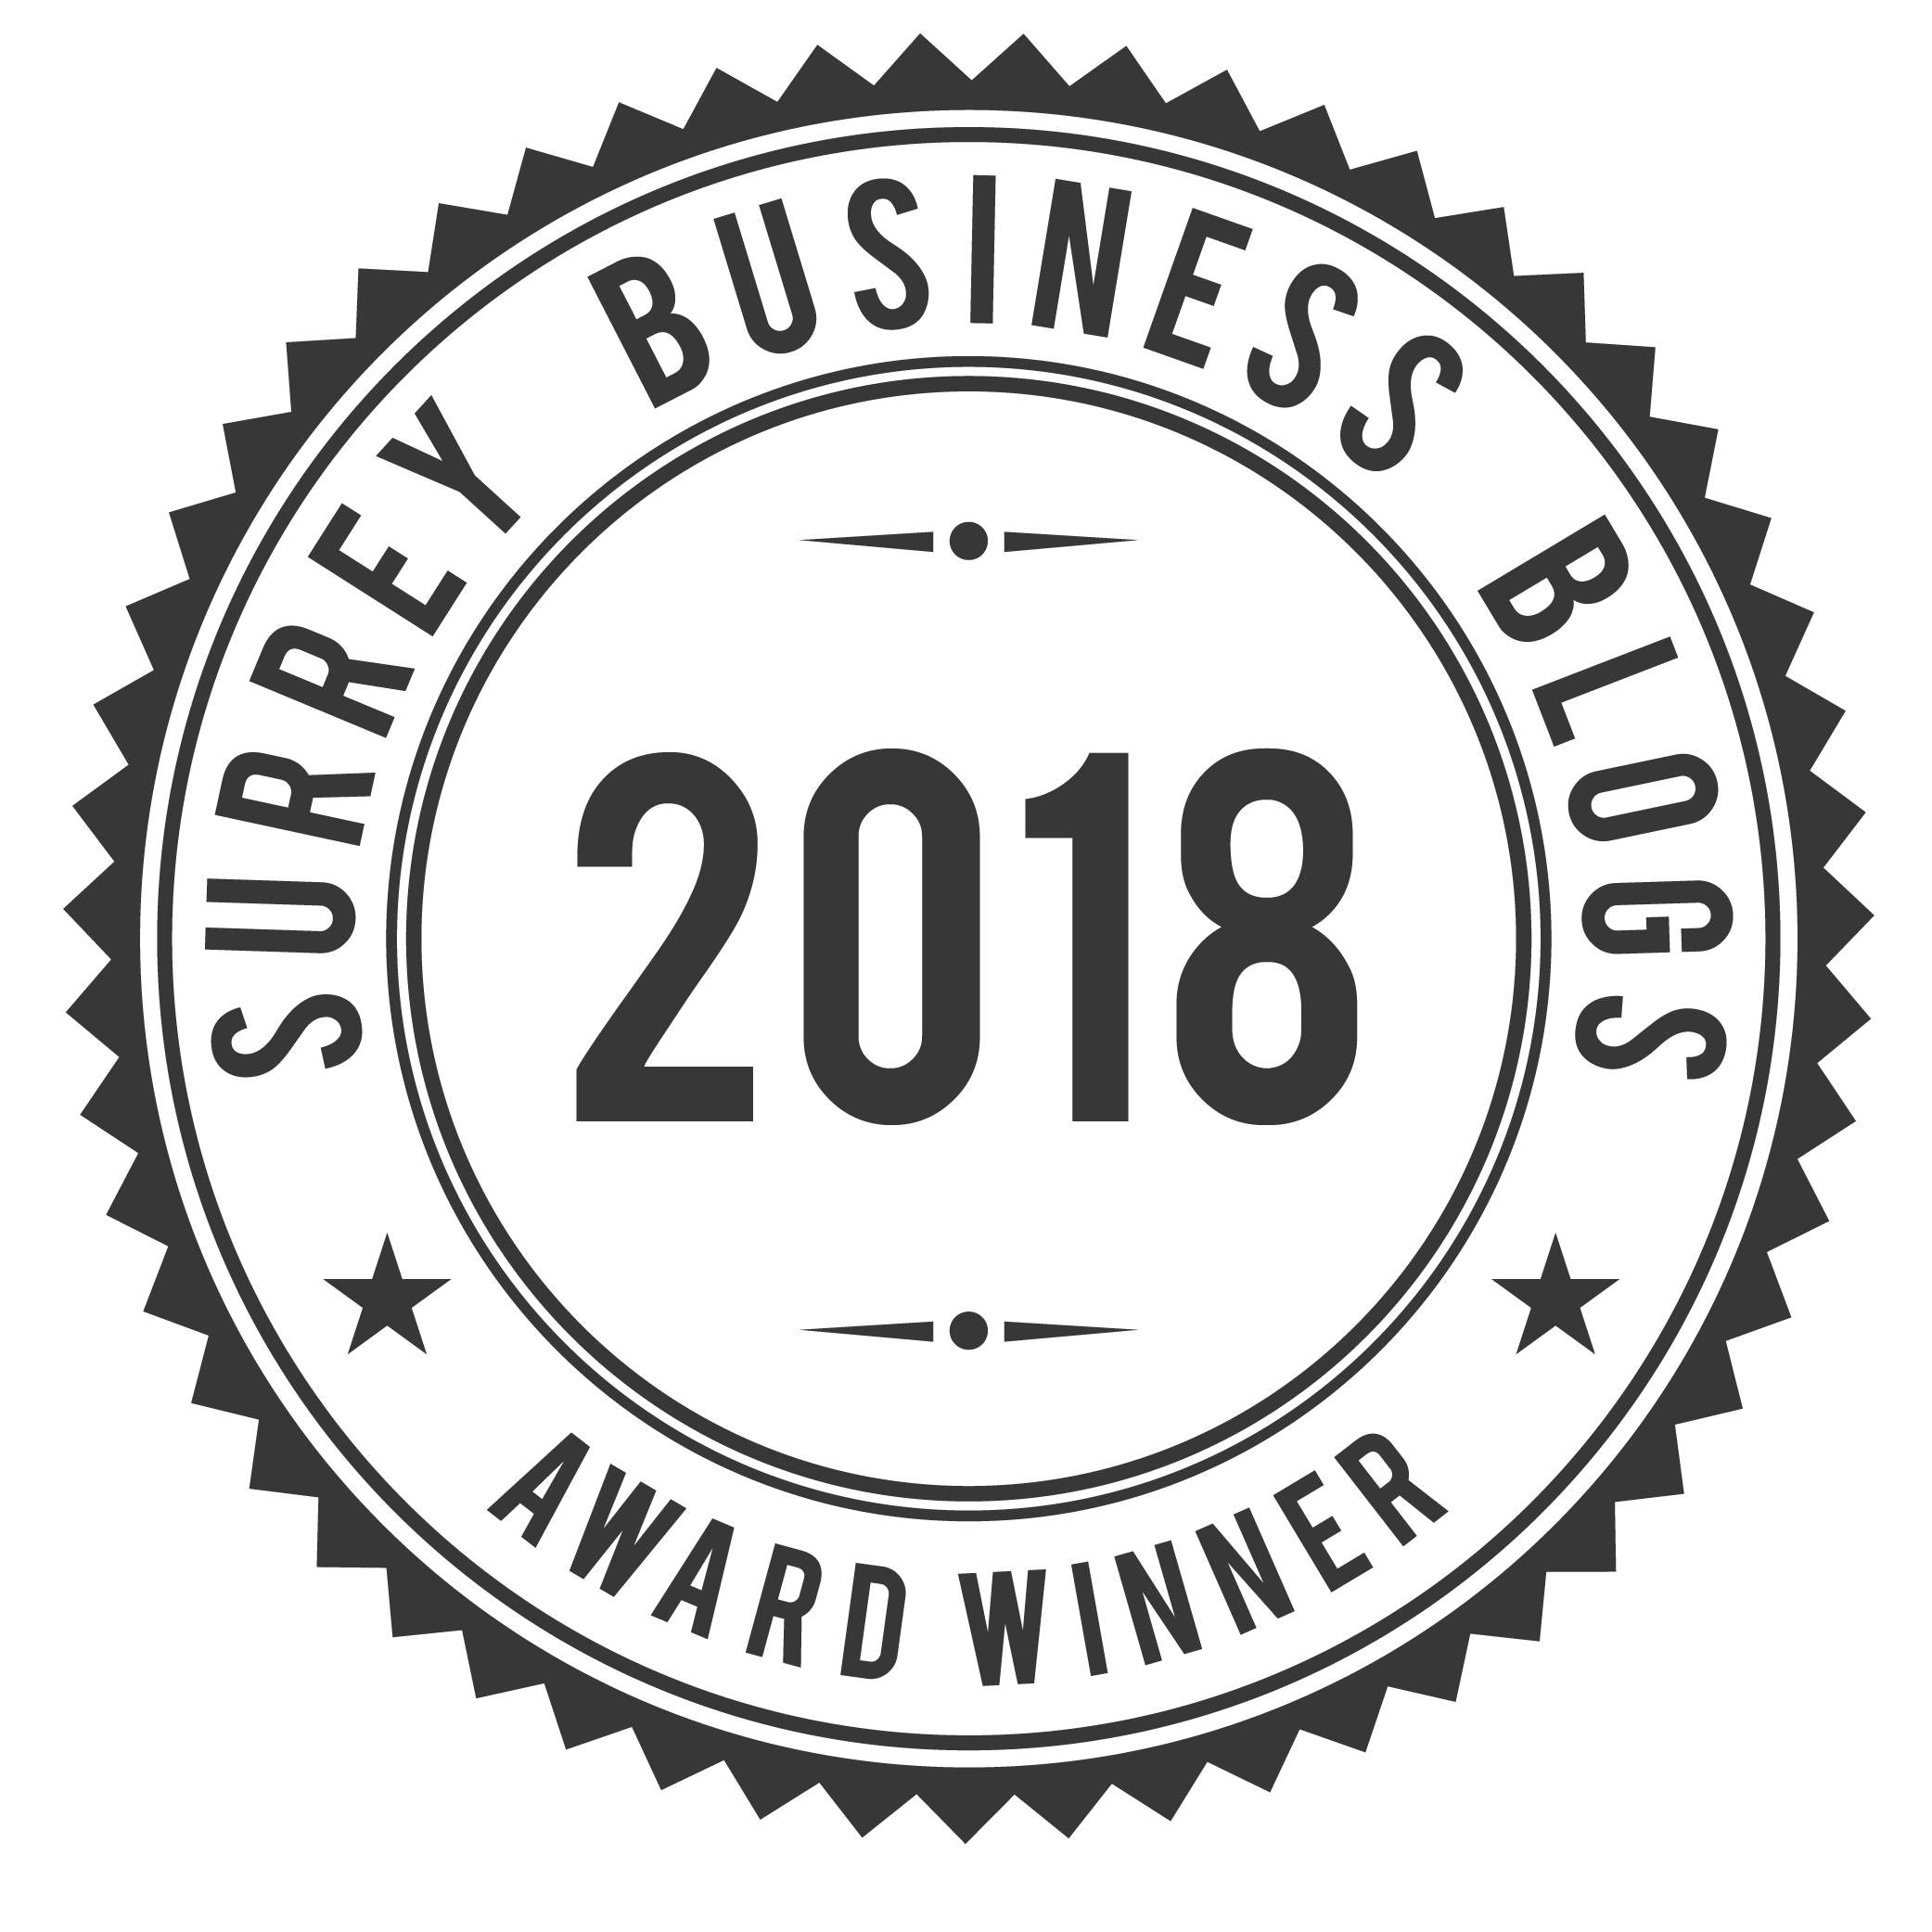 Business Blog Logo - The 8 Best Surrey Business Blogs 2018 - B2Bmetric - Surrey's Leading ...